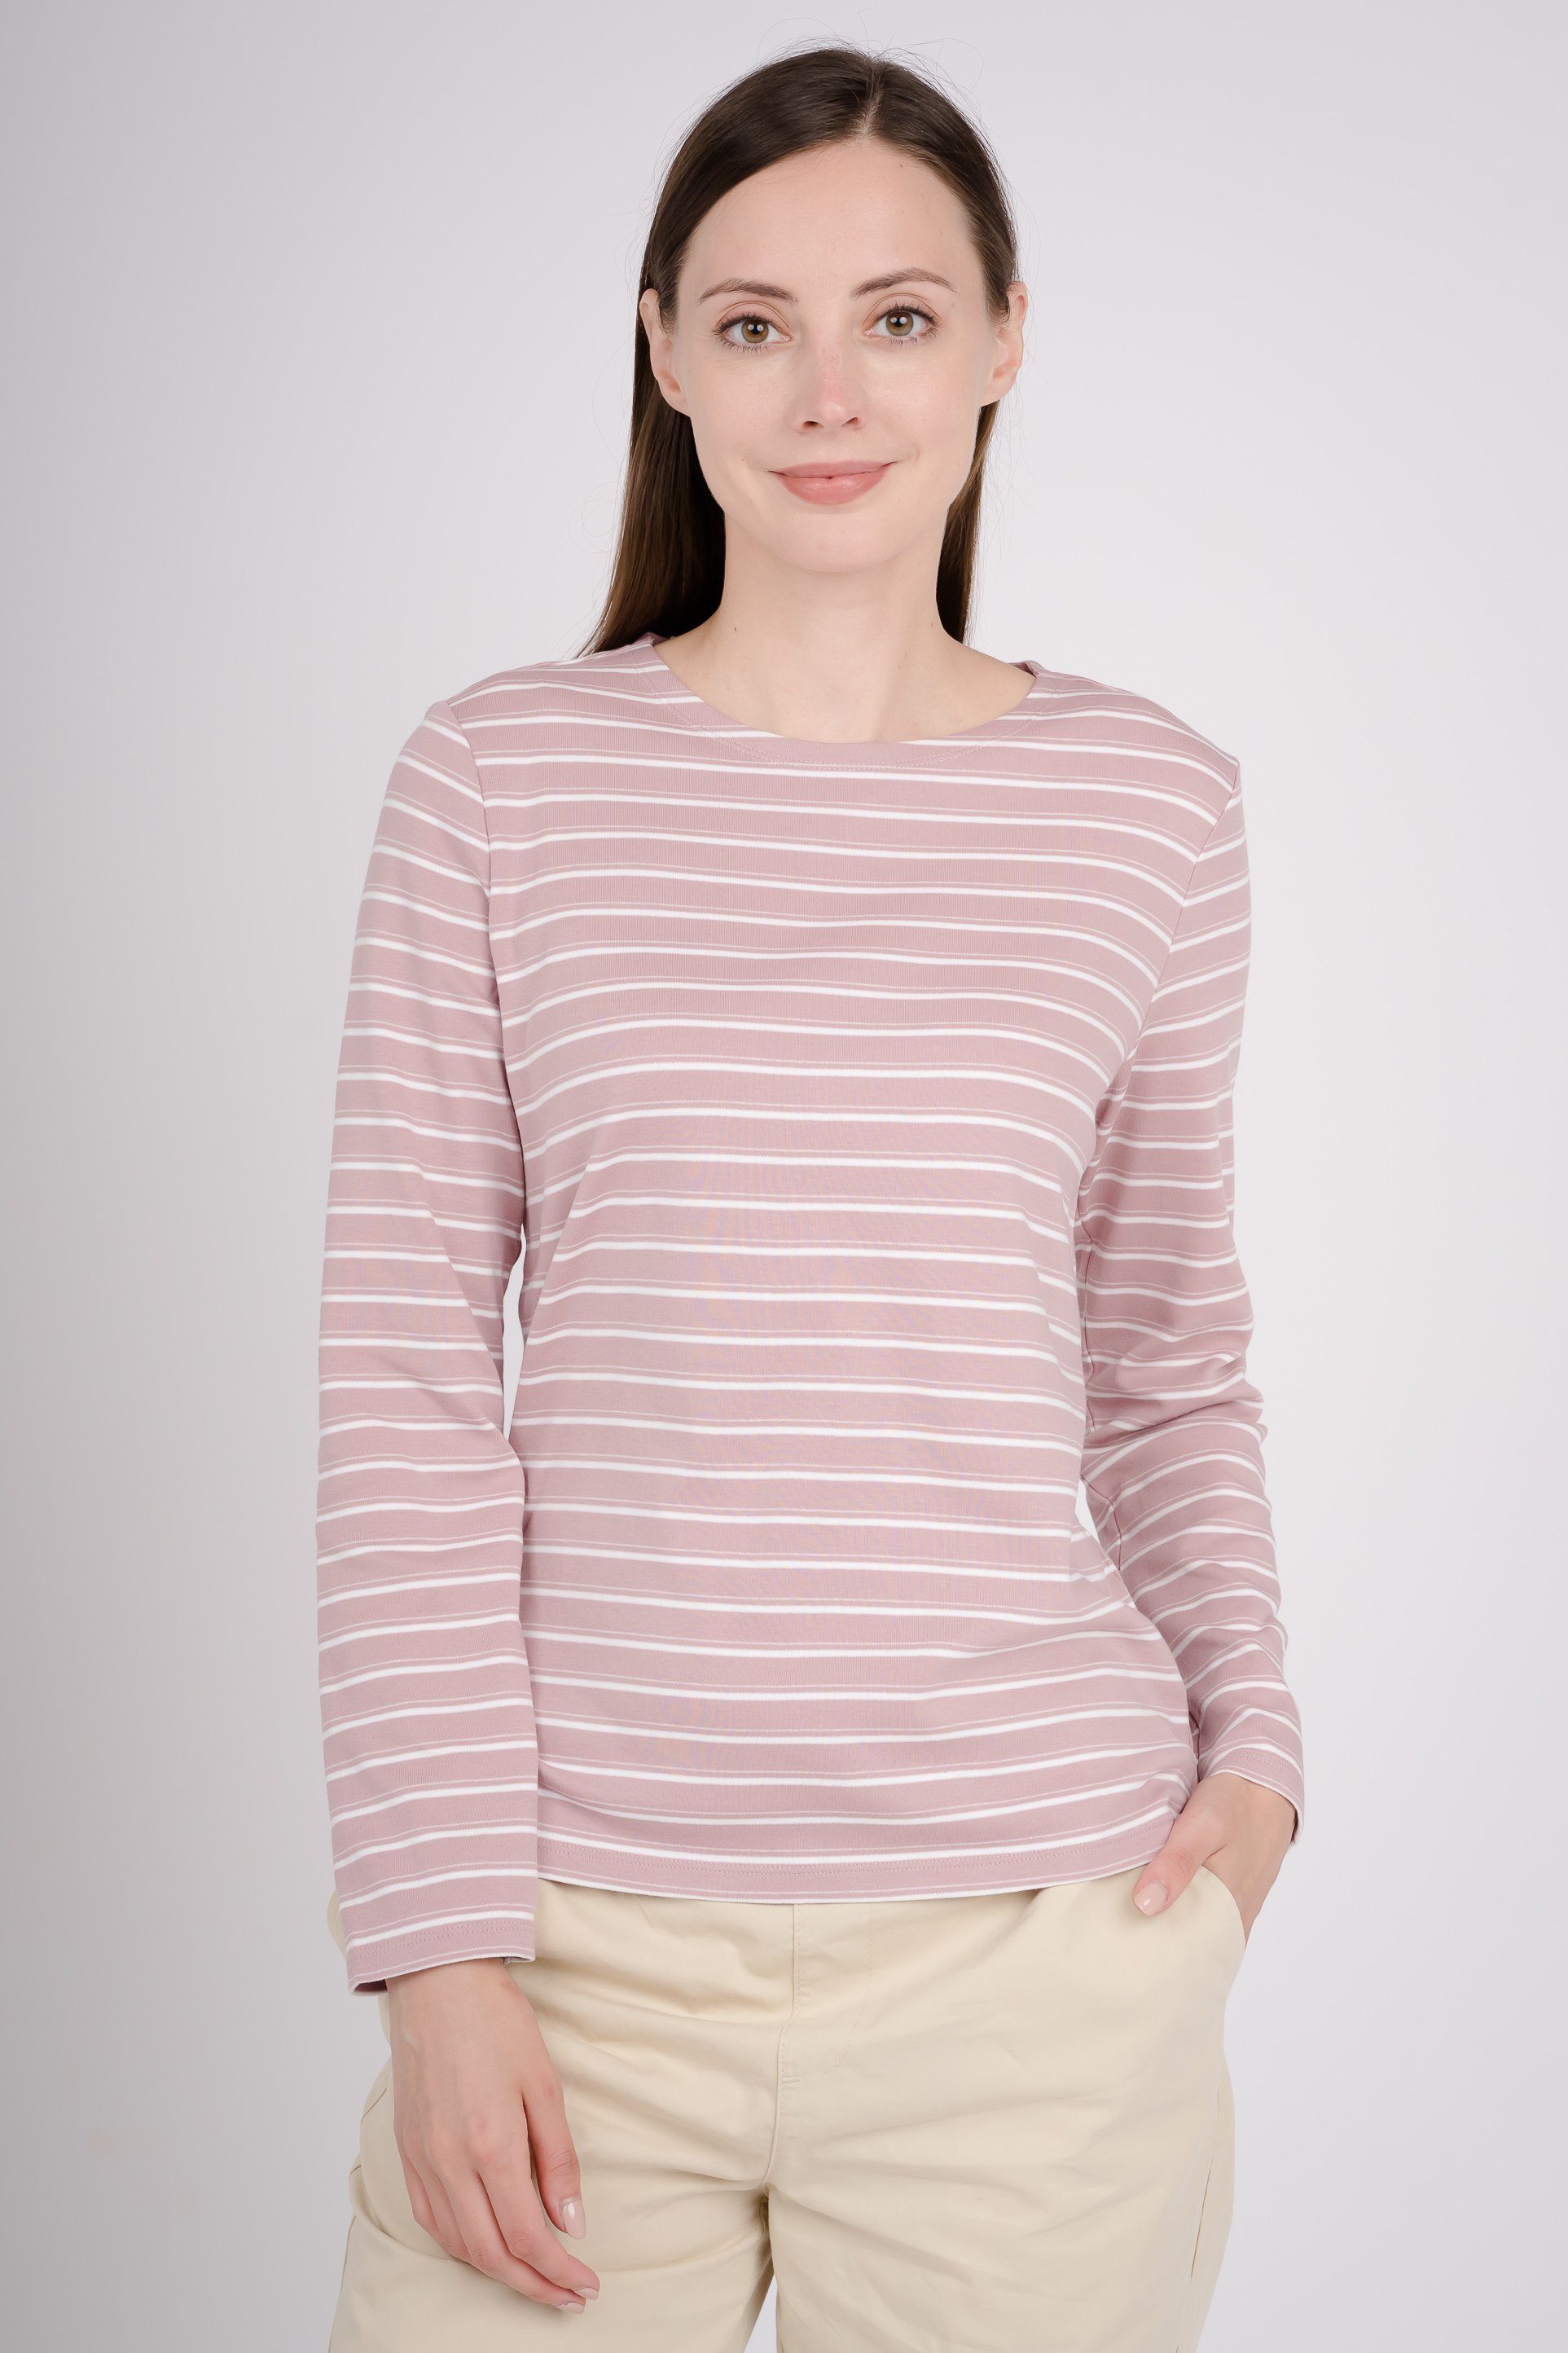 GIORDANO Langarmshirt in tollem Streifen-Design pink-weiß